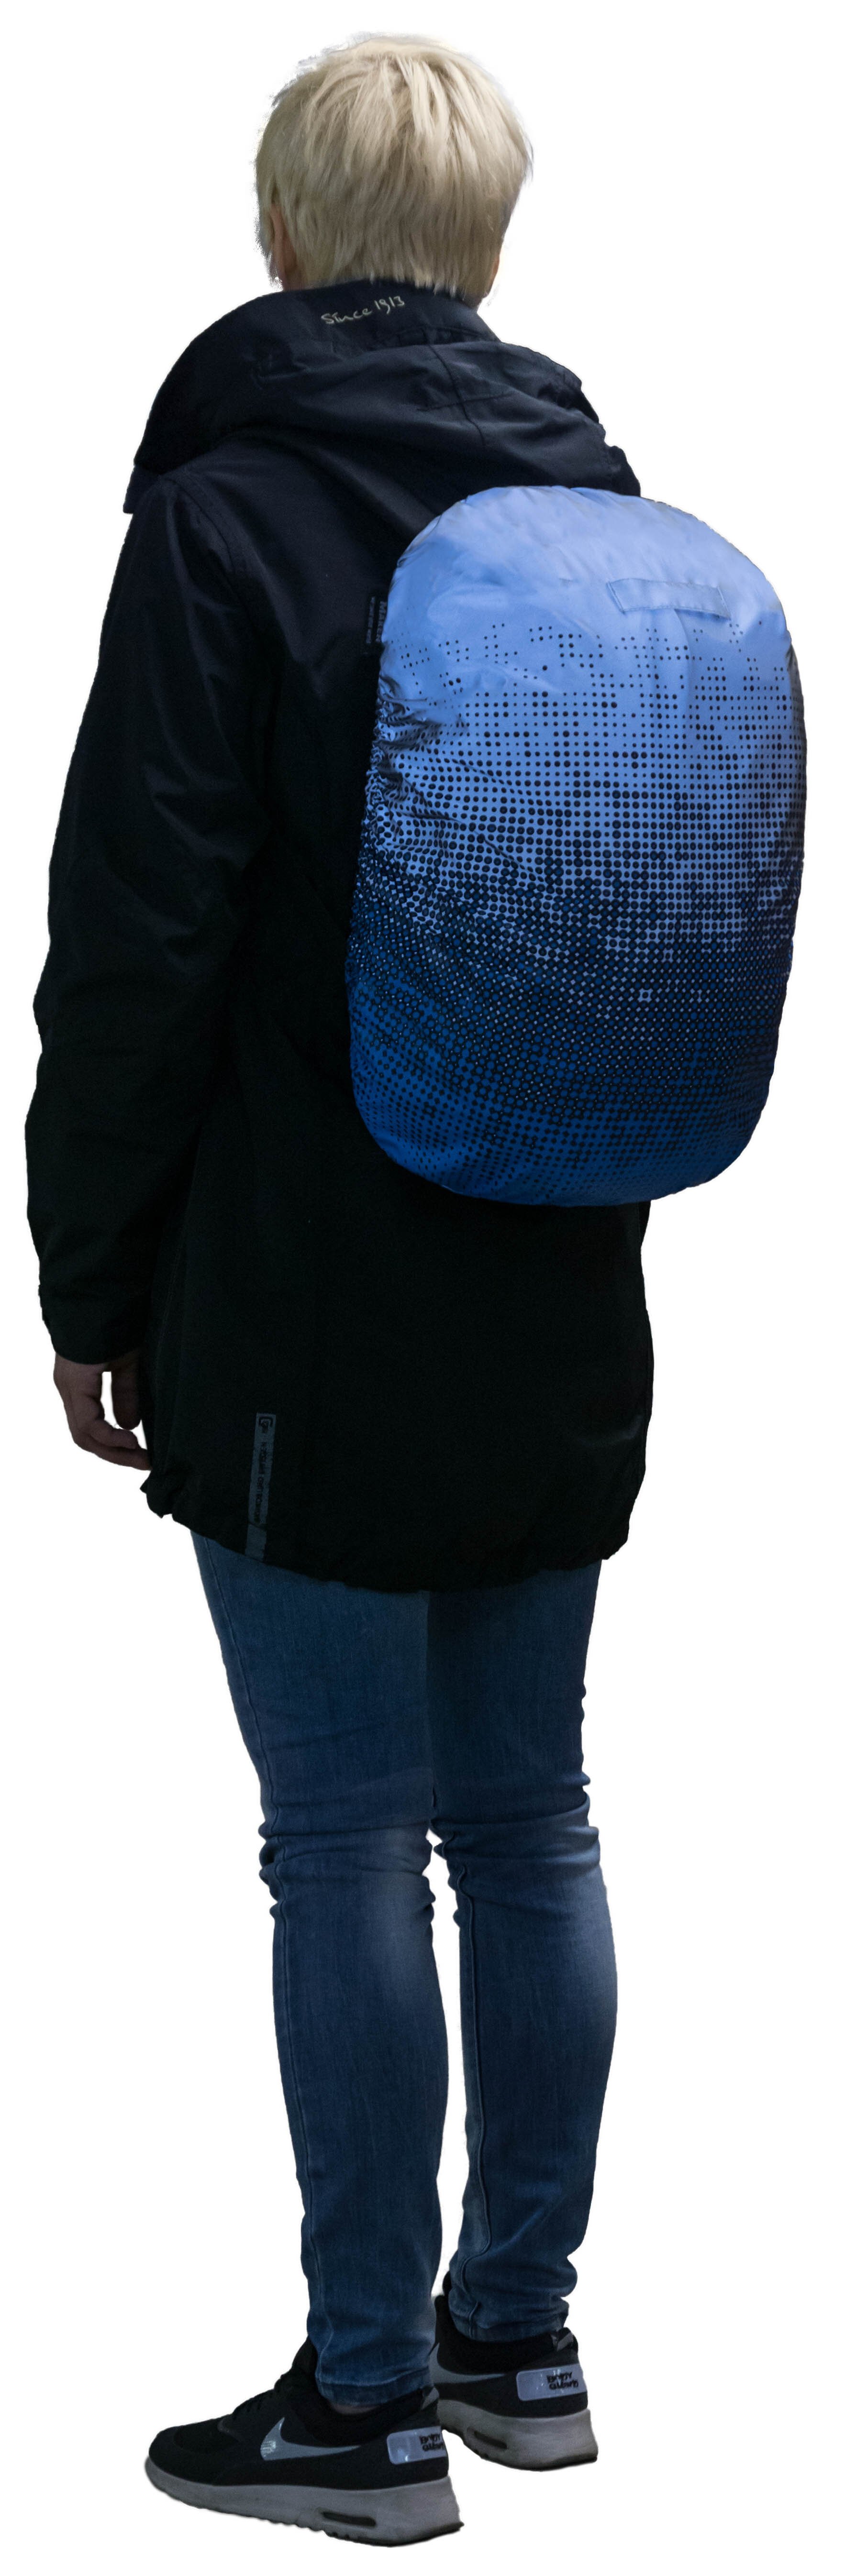 Couverture de sac réfléchissante argenté-bleu réfléchissant